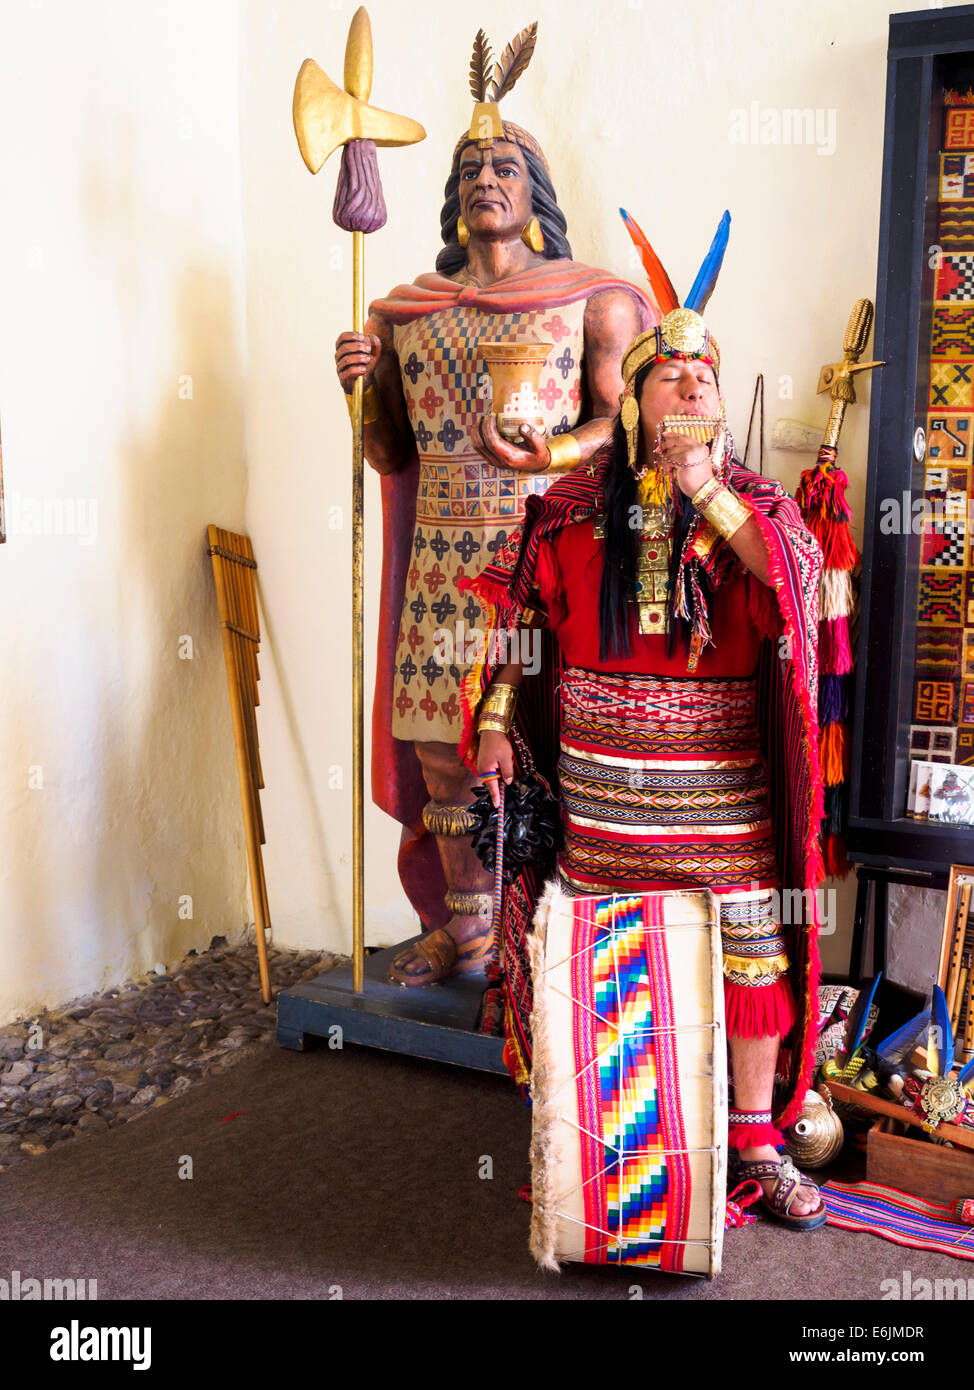 L'homme habillé comme un Inca jouer de la flûte à l'entrée du Musée des Incas - Cusco, Pérou Banque D'Images